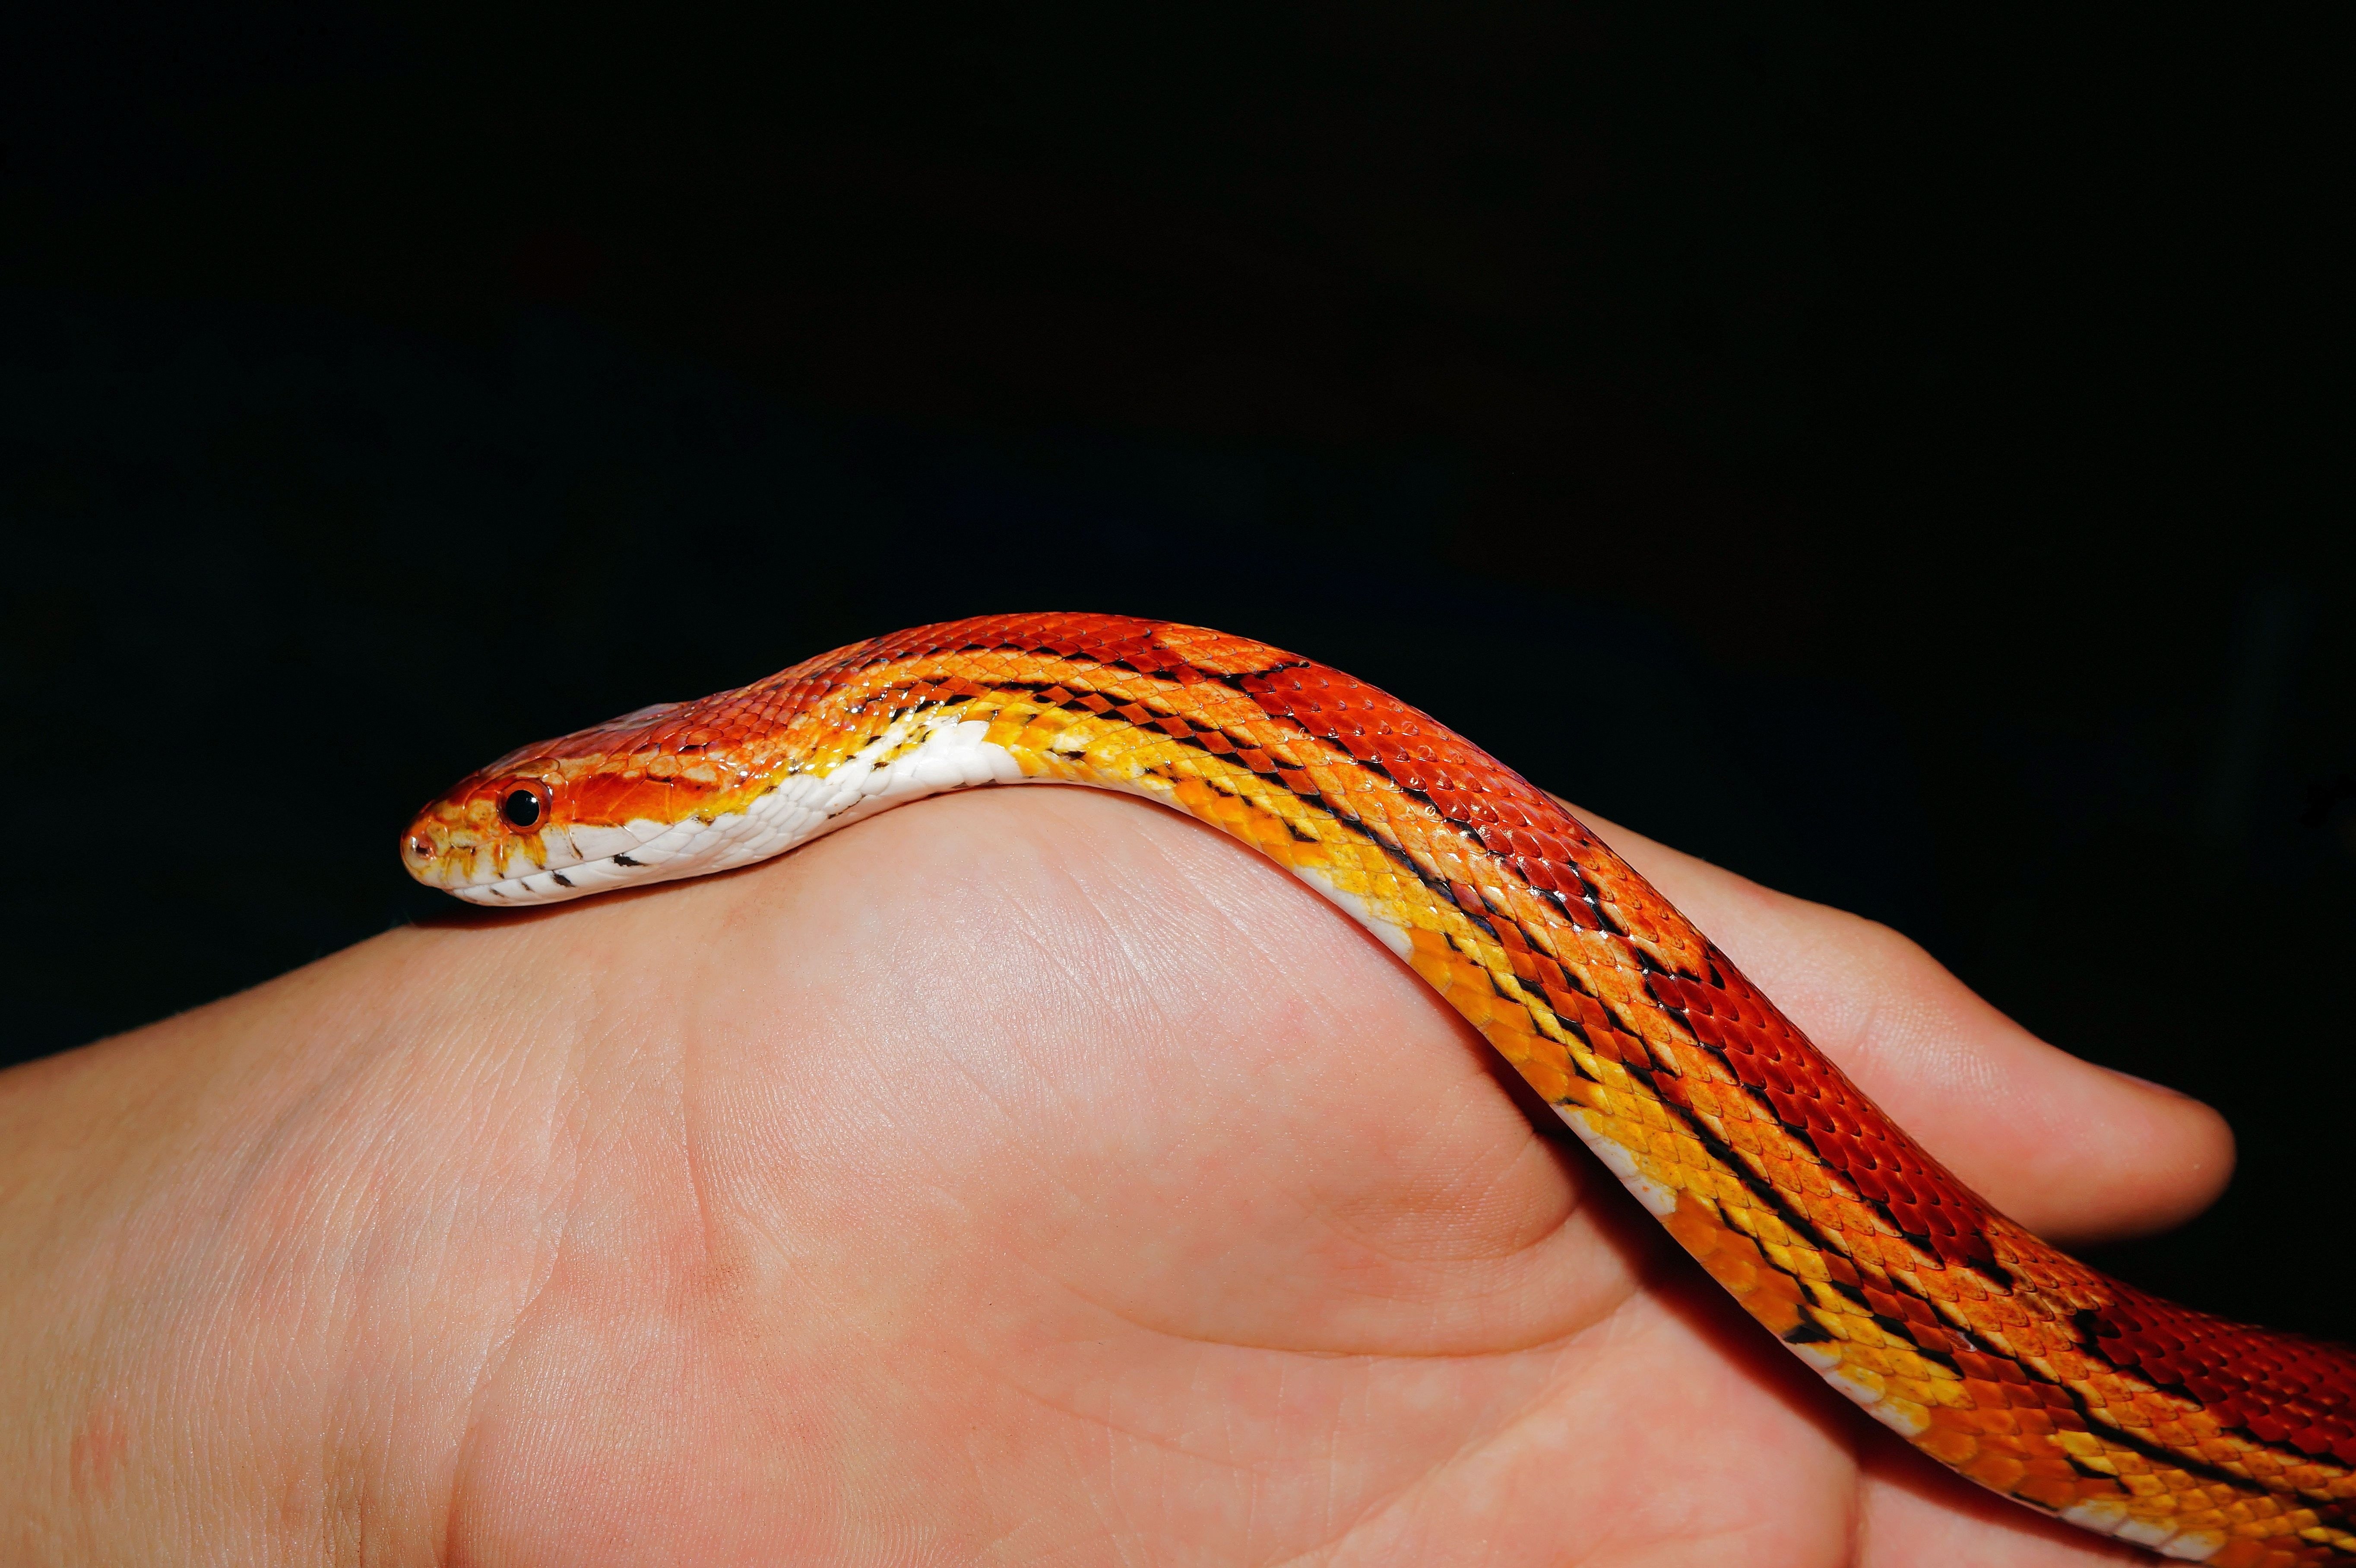 Змея изо рта. КУКУРУЗОВЫЙ полоз. Неядовитая оранжевая змея. Кукурузная змея. Полоз оранжевый.